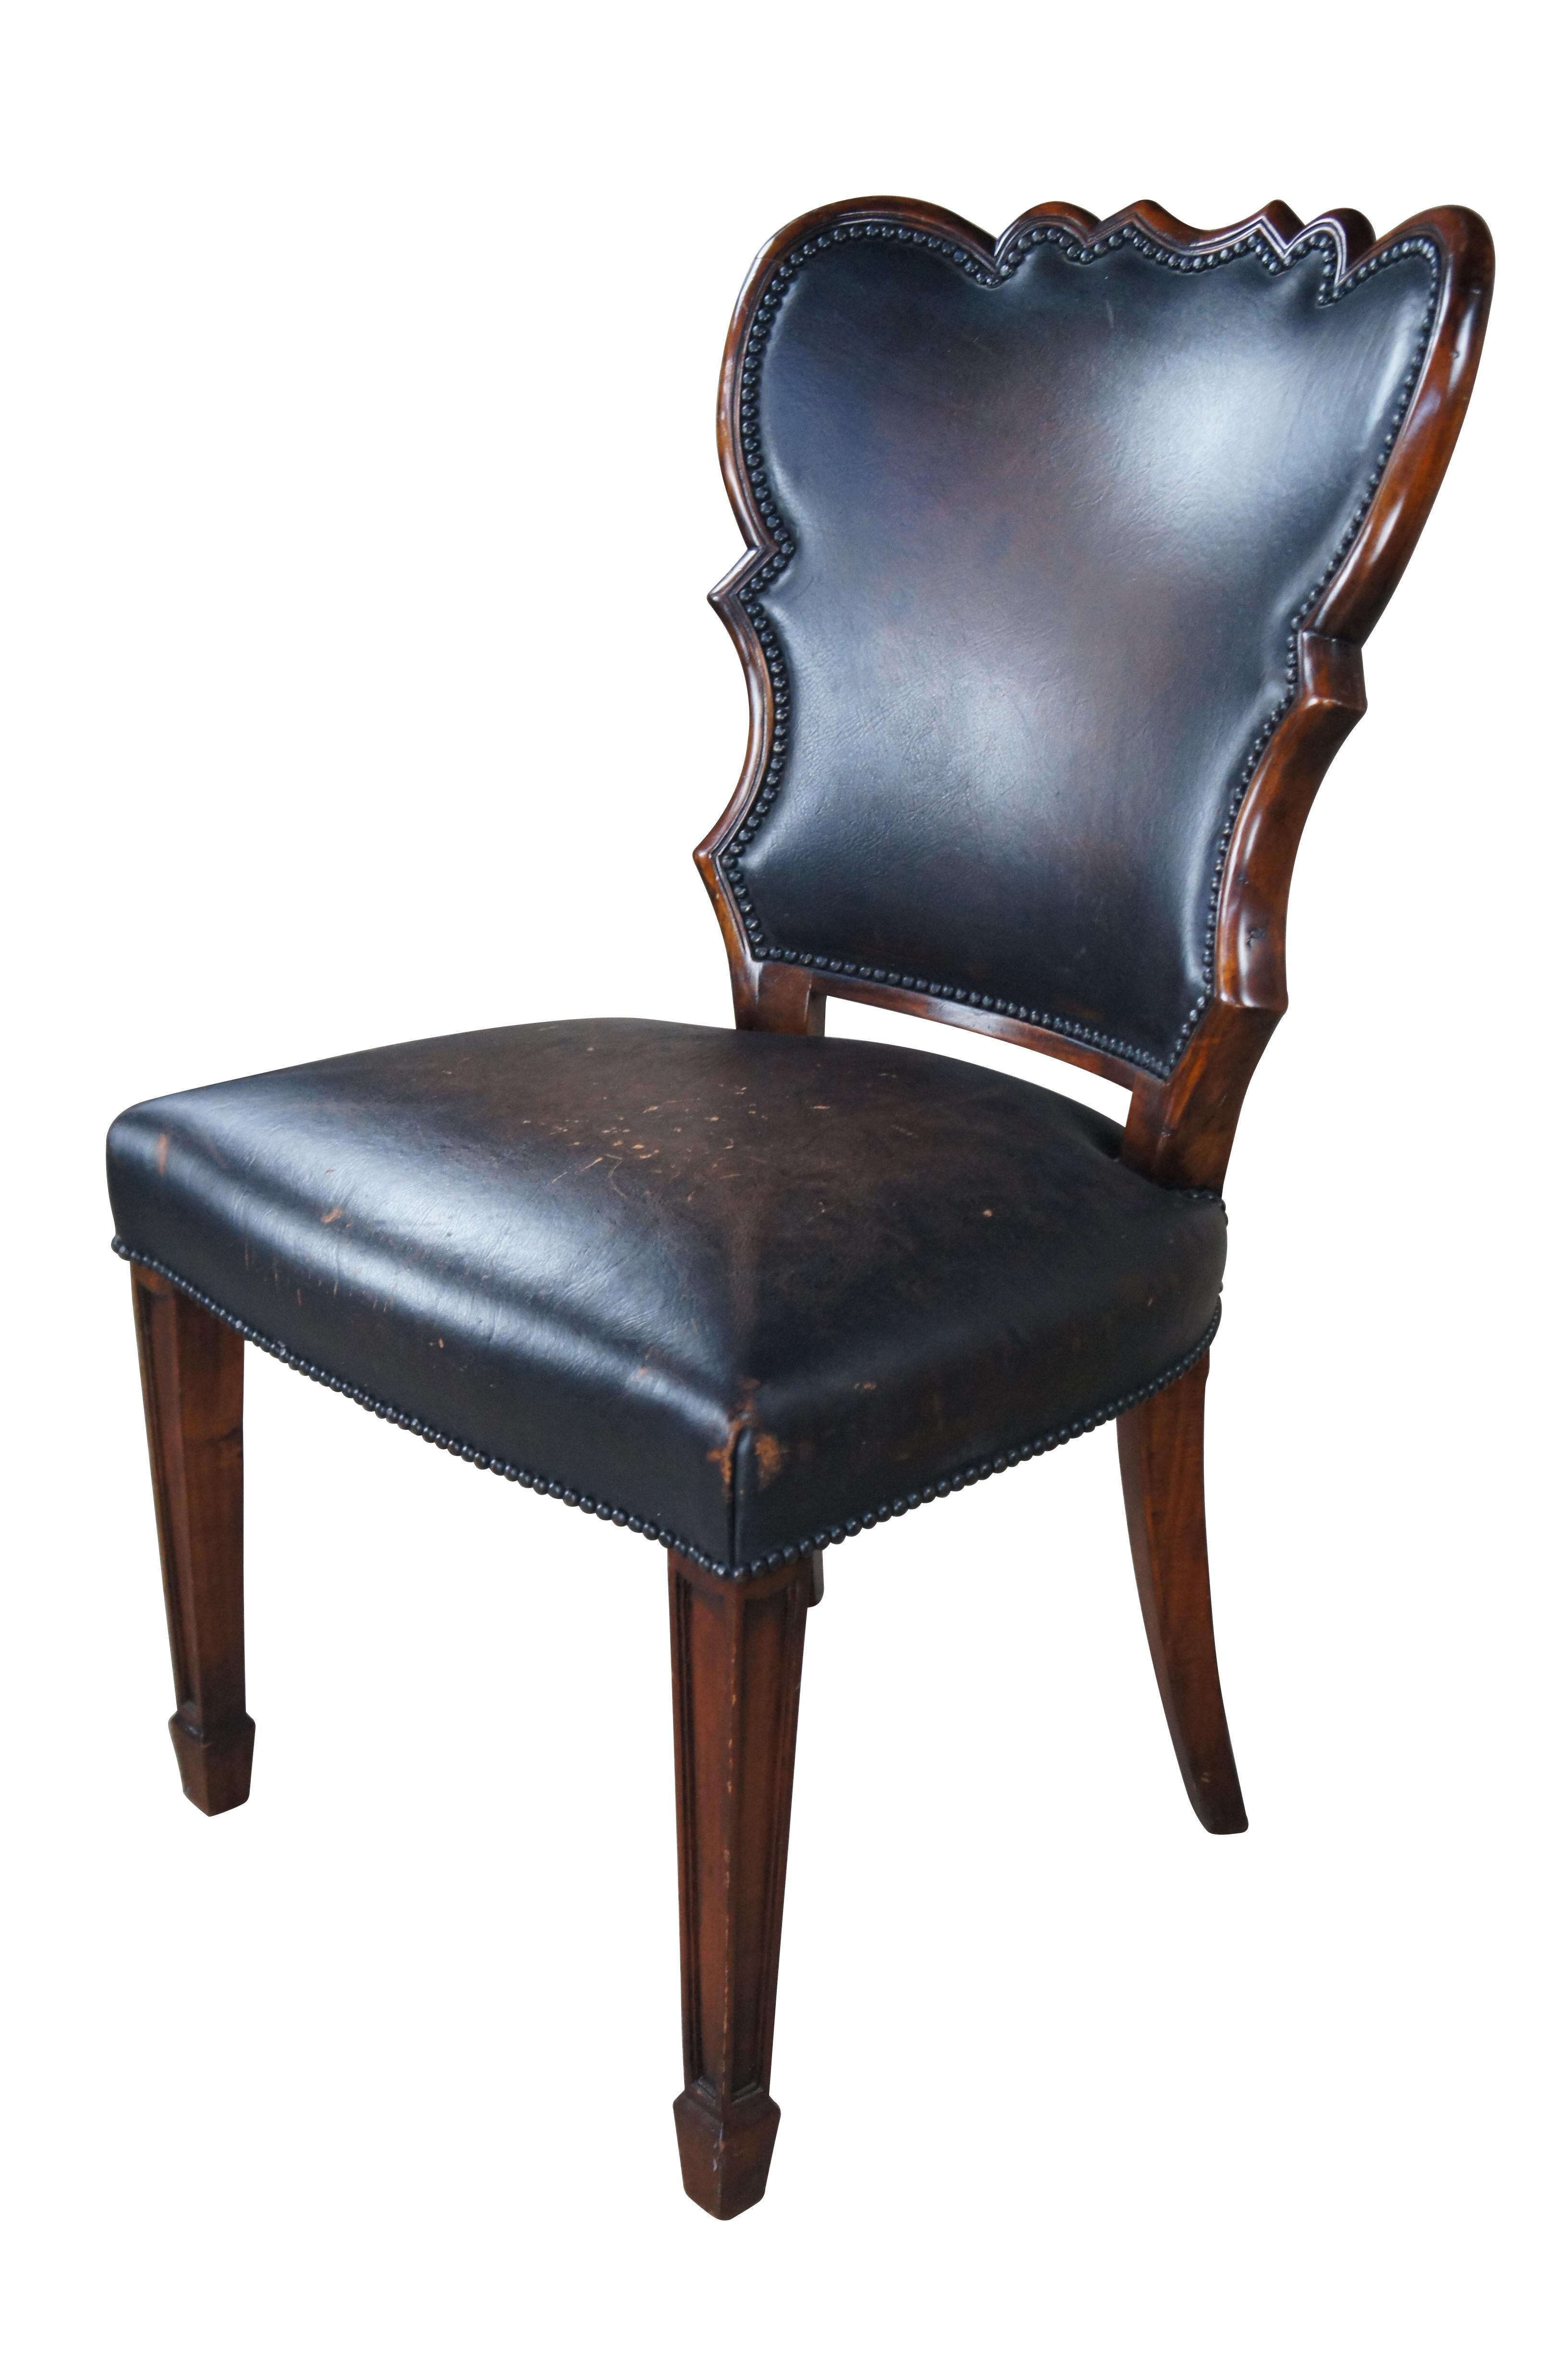 Ein exquisiter Beistellstuhl des späten 20. Jahrhunderts von Theodore Alexander.  Entworfen in der Art des Sheraton / Federal-Stils mit einer skulpturalen Rückenlehne und einem großen Sitz über quadratischen, sich verjüngenden Beinen, die zu